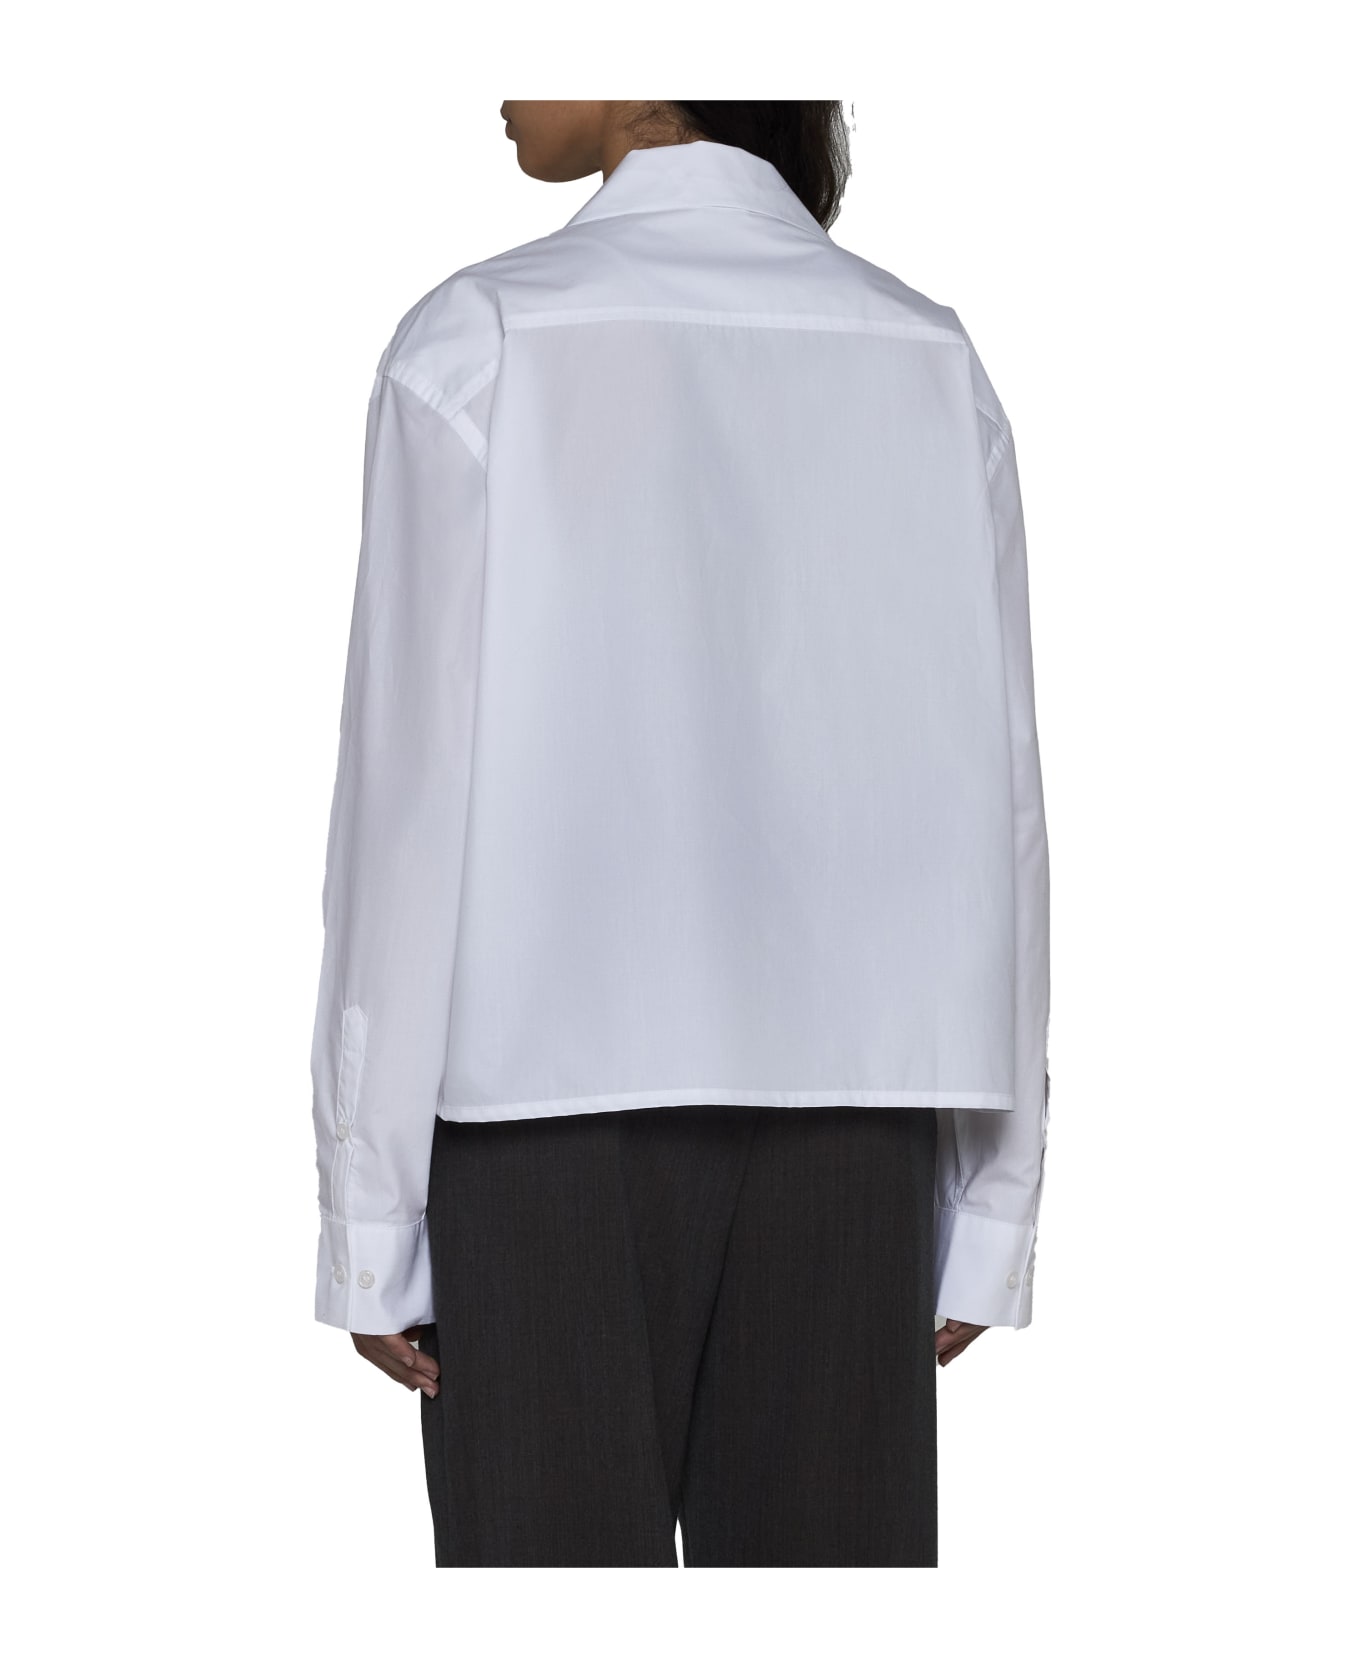 Filippa K Shirt - White